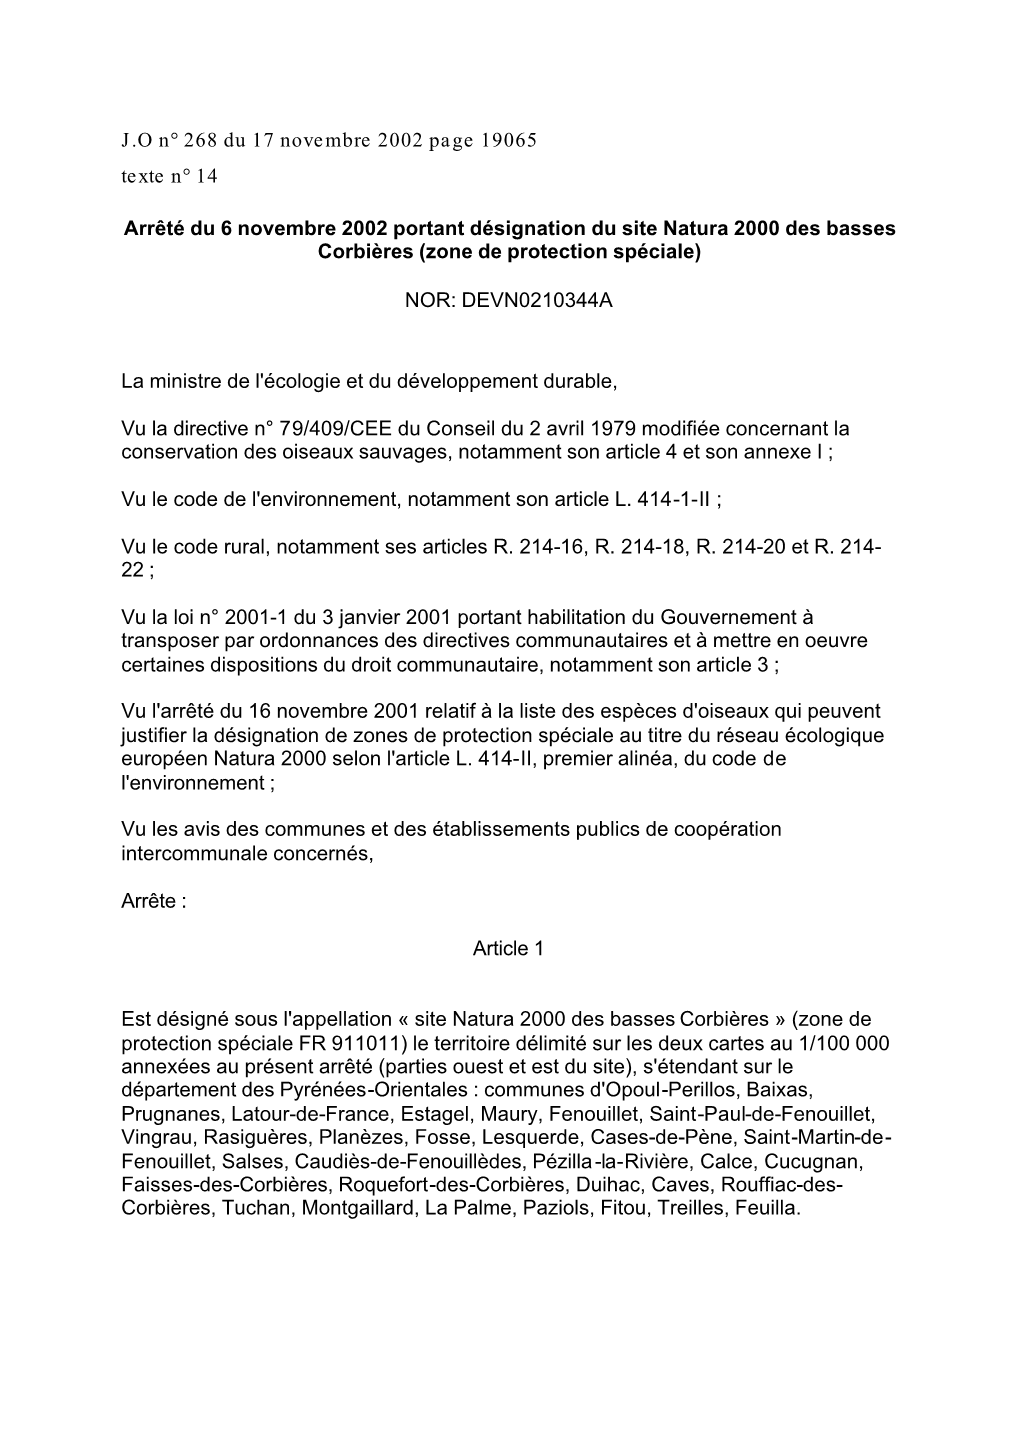 Arrêté Du 6 Novembre 2002 Portant Désignation Du Site Natura 2000 Des Basses Corbières (Zone De Protection Spéciale)